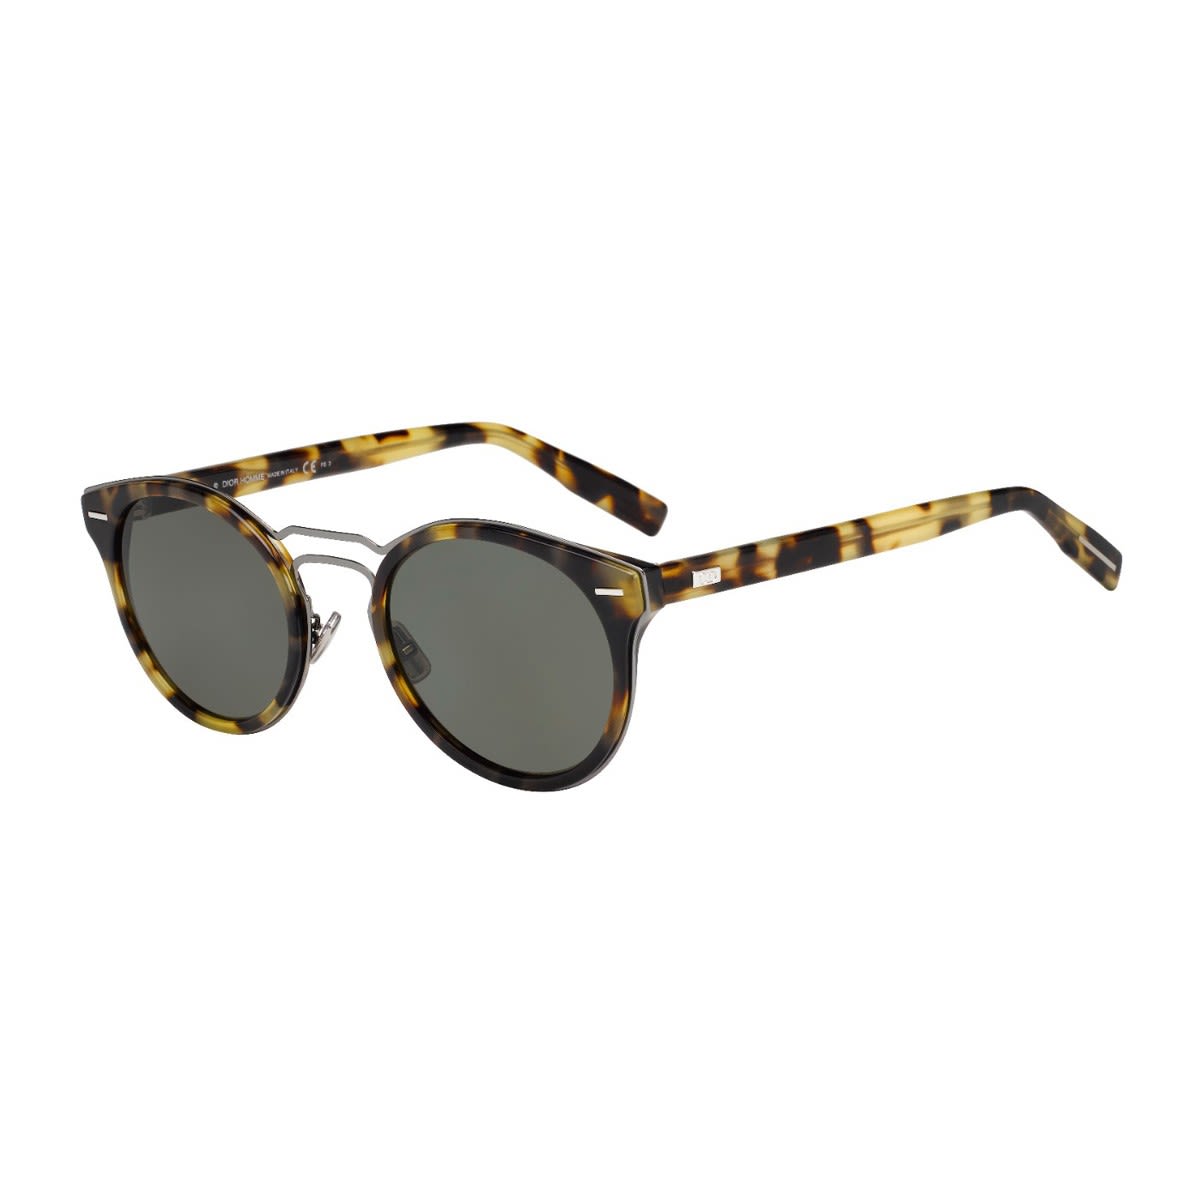 Dior 0209s Sunglasses In Marrone